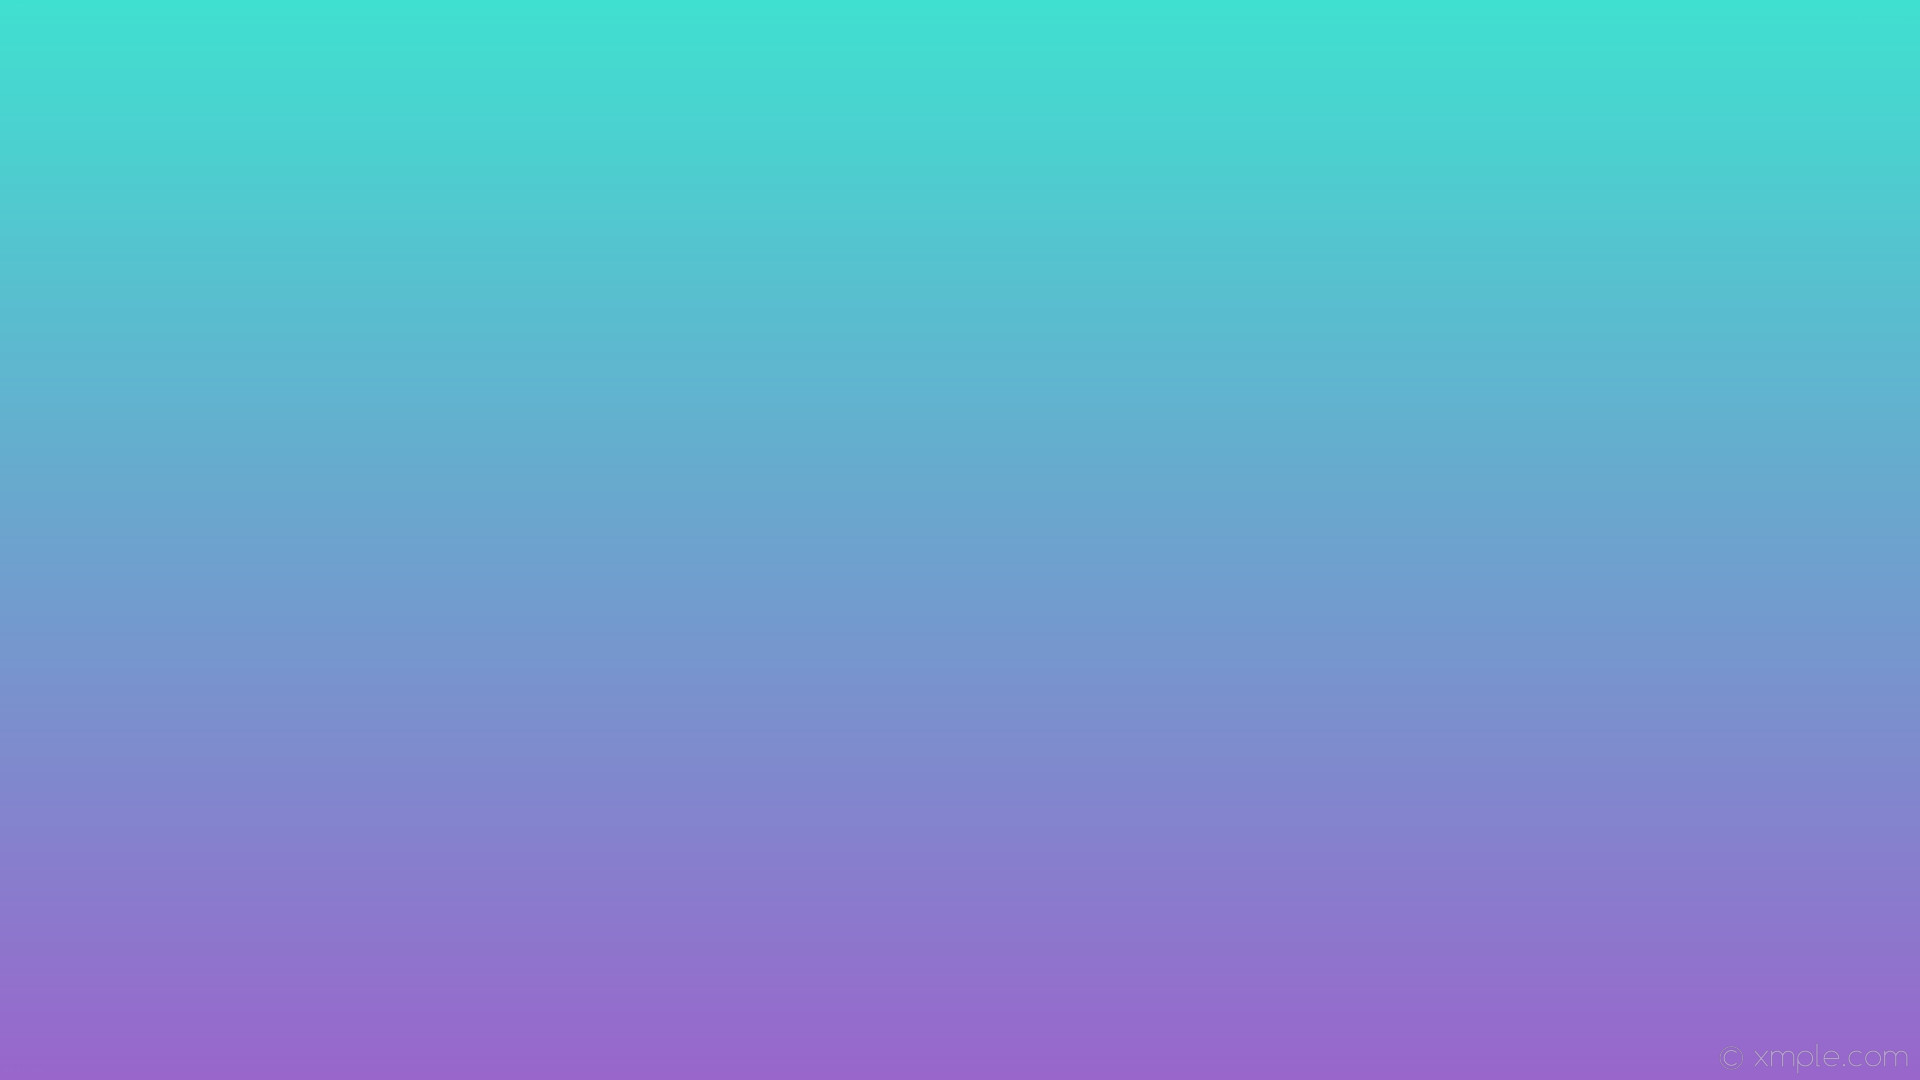 1920x1080 wallpaper linear blue purple gradient turquoise amethyst #40e0d0 #9966cc 90Â°